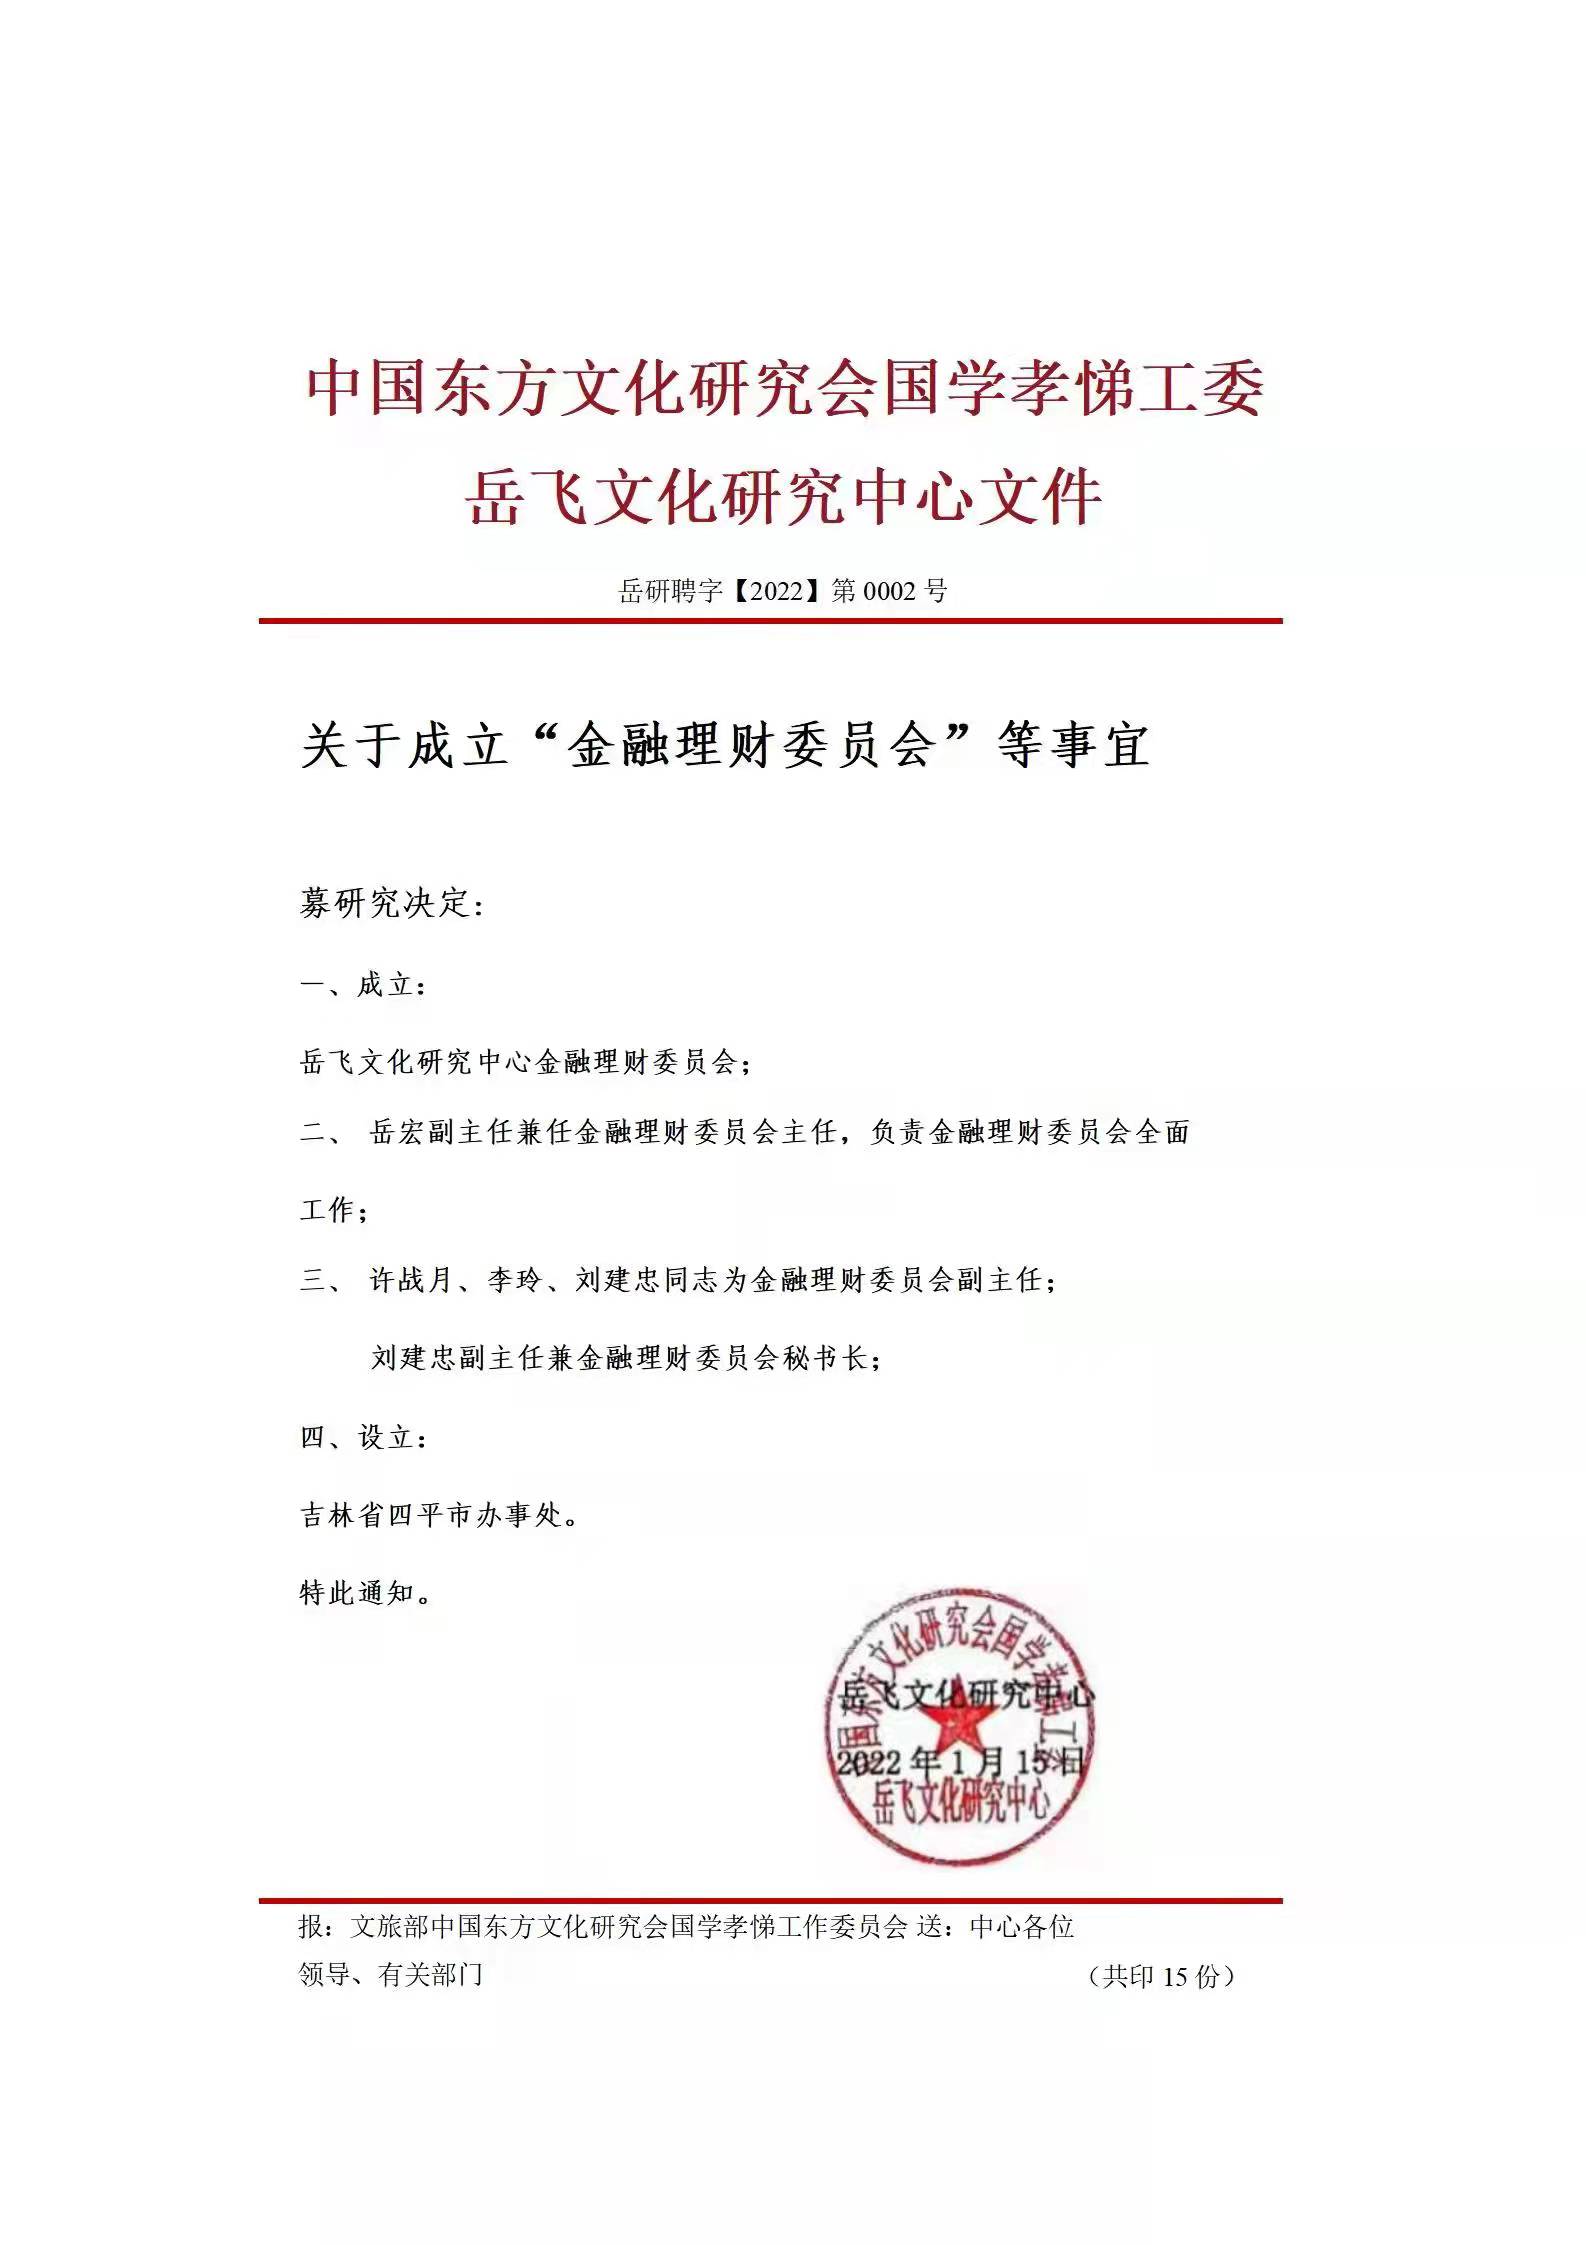 中国东方文化研究会岳飞文化研究中心金融理财委员会成立